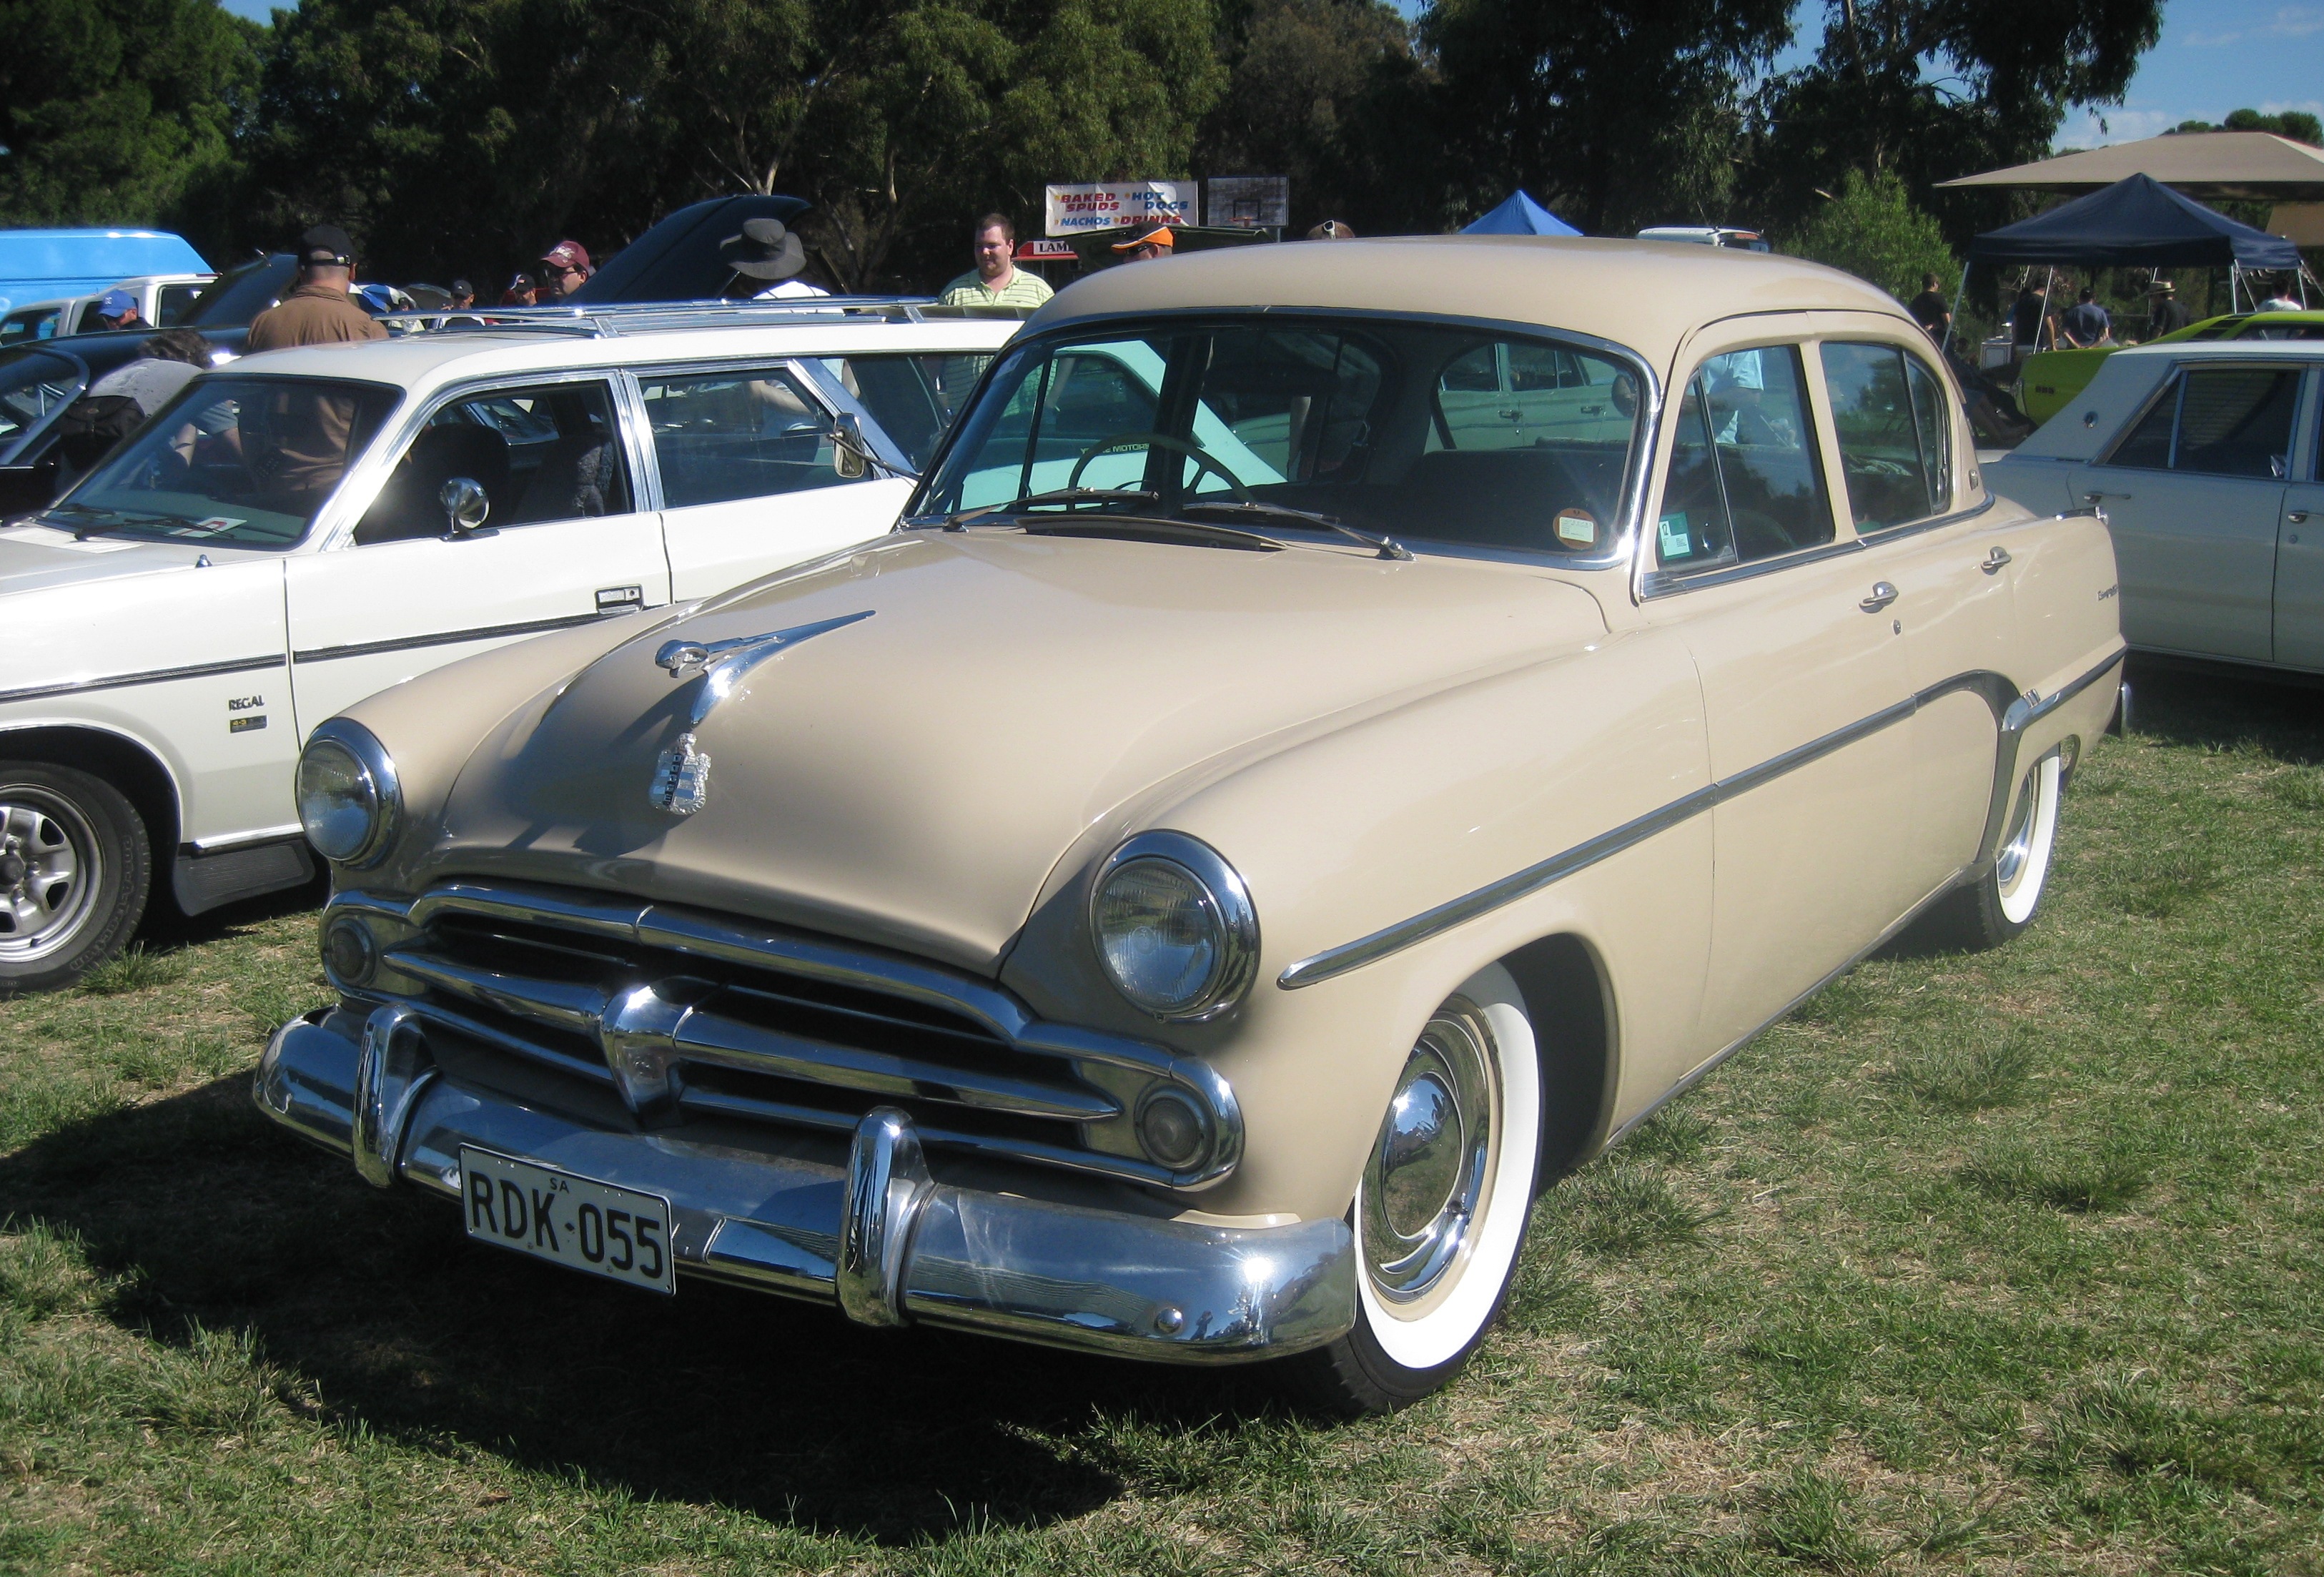 File:Dodge Kingsway 1955 (front).JPG